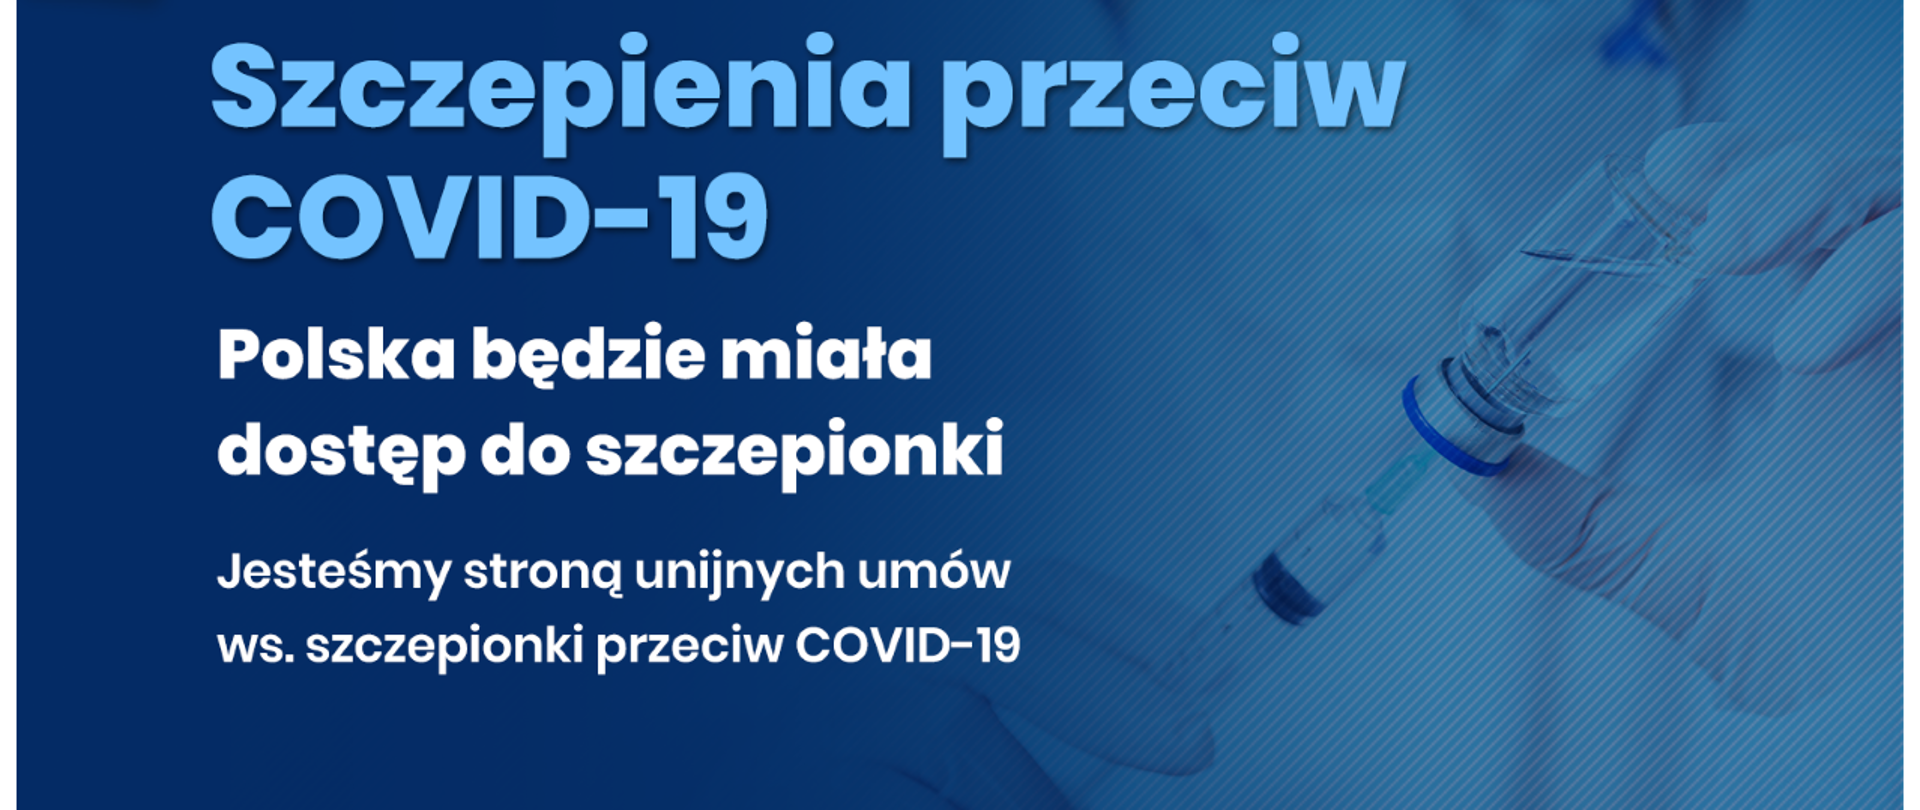 Na niebieskim tle napis: Szczepienia przeciw COVID-19. Polska będzie miała dostęp do szczepionki. Jesteśmy stroną unijnych umów ws. szczepionki przeciw COVID-19. W tle laborantka ze szczepionką.